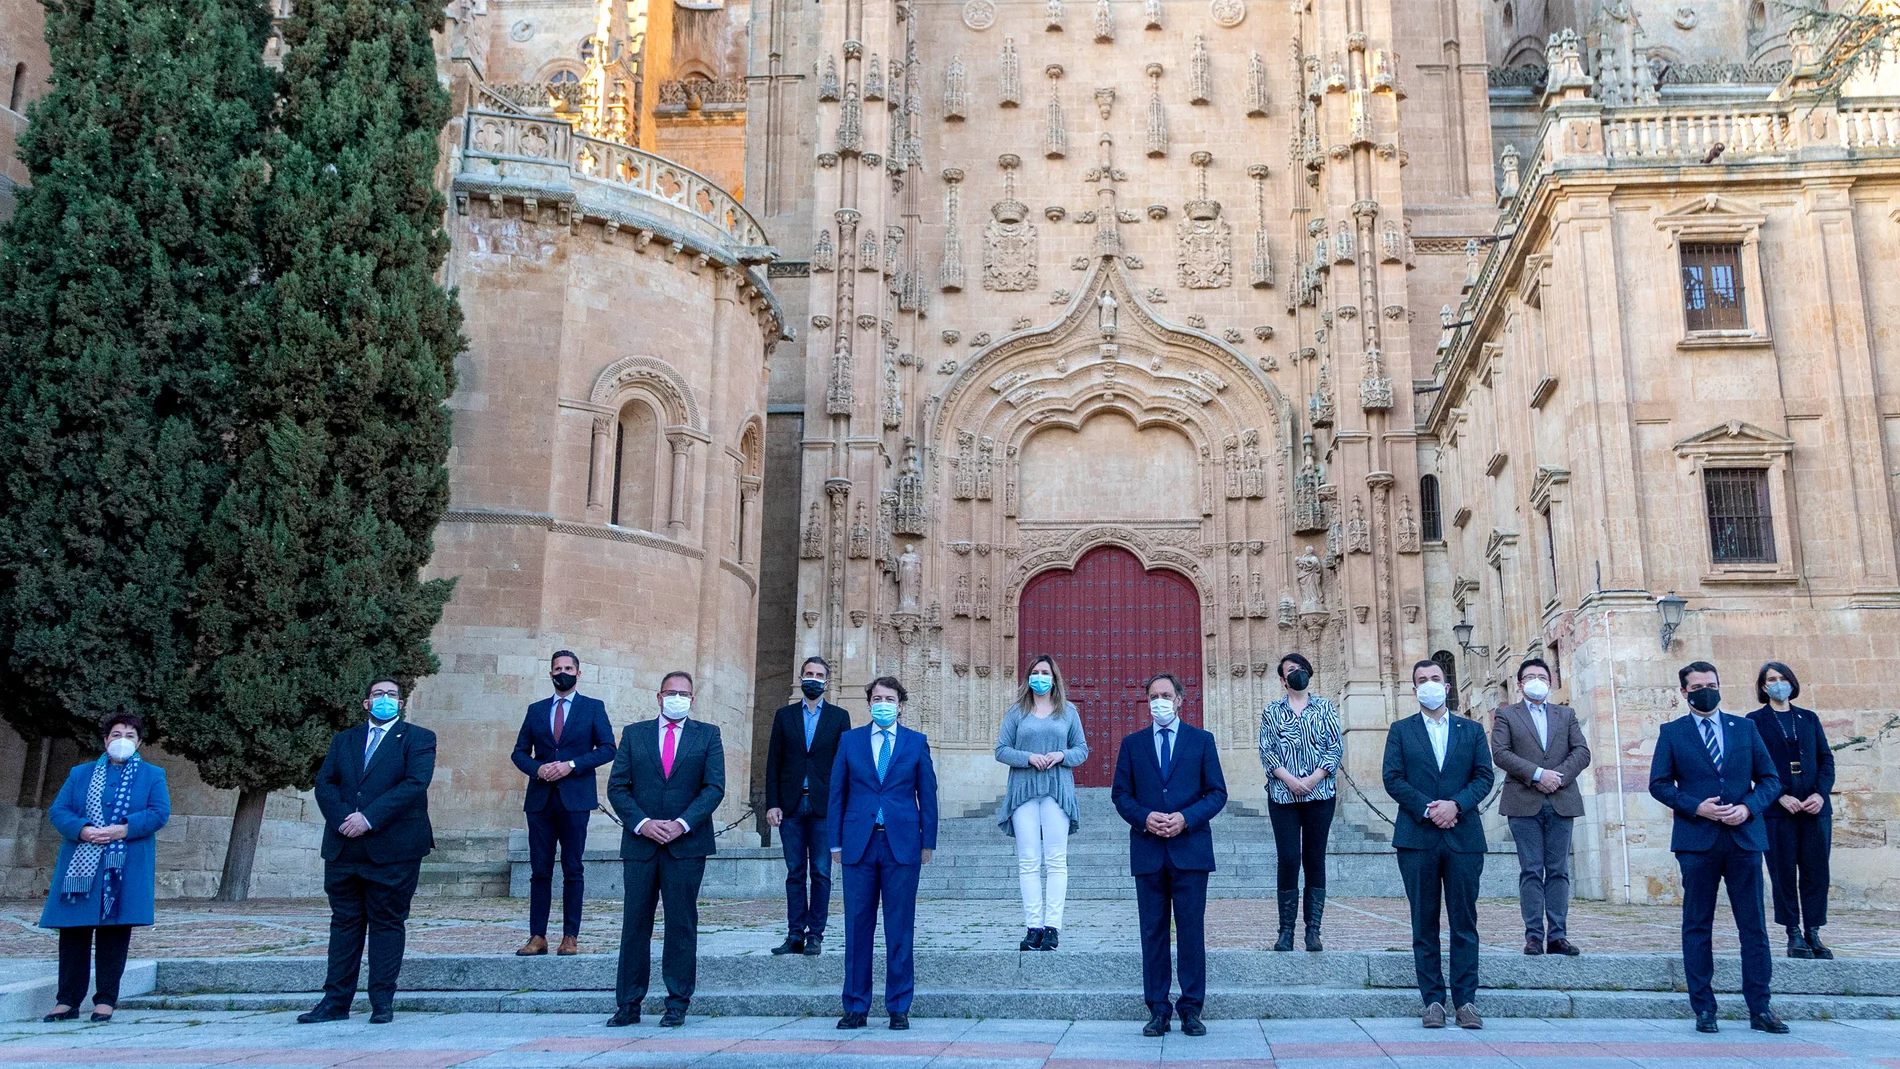 El presidente de la Junta de Castilla y León, Alfonso Fernández Mañueco, durante la recepción en Salamanca a los 15 alcaldes y alcaldesas del Grupo de Ciudades Patrimonio de la Humanidad